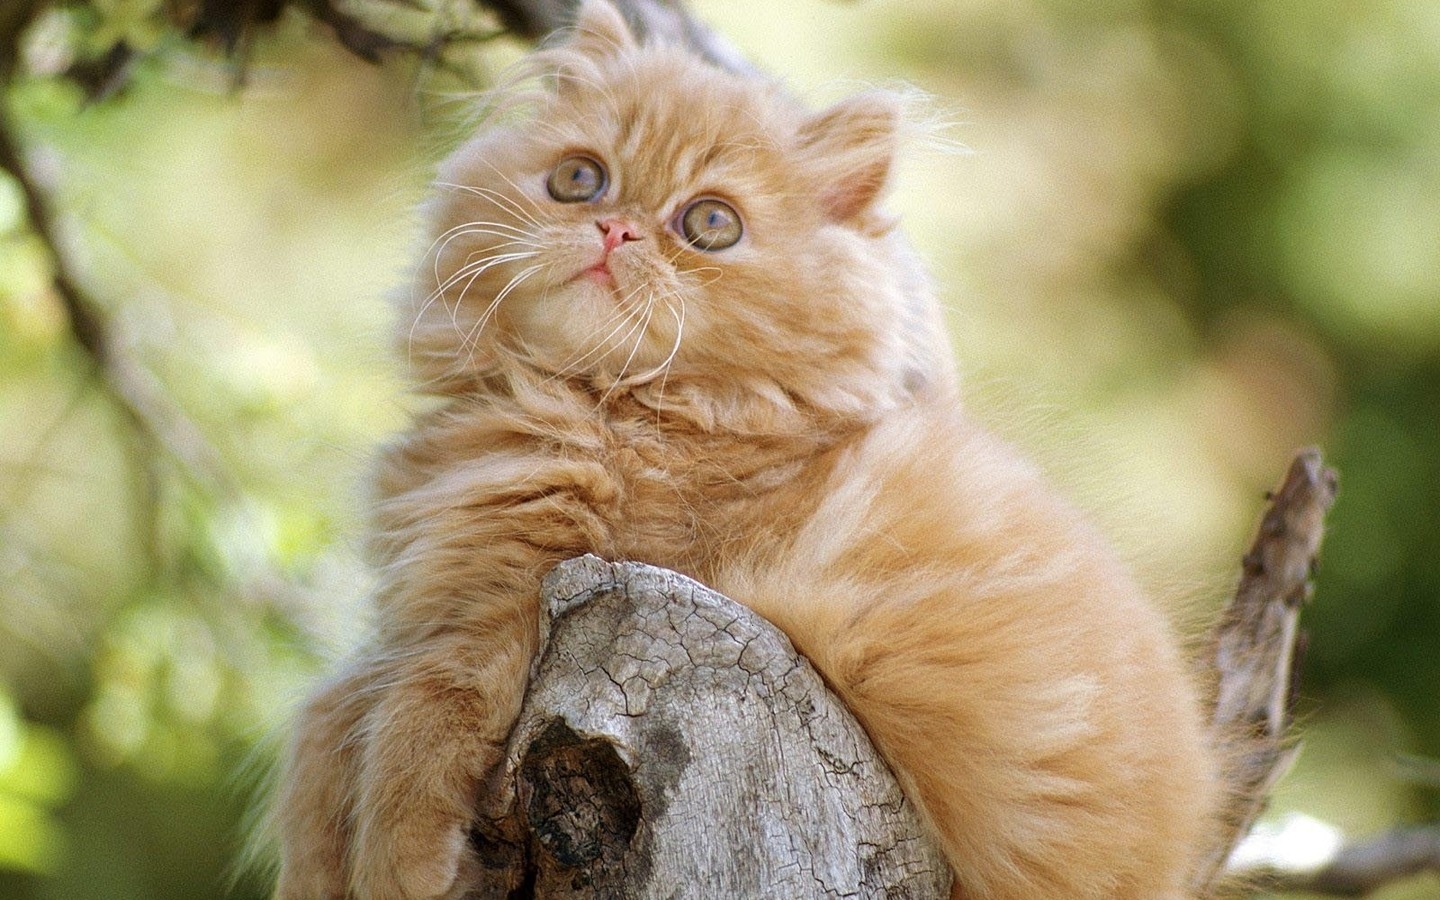 Cute Persian Kitten for 1440 x 900 widescreen resolution